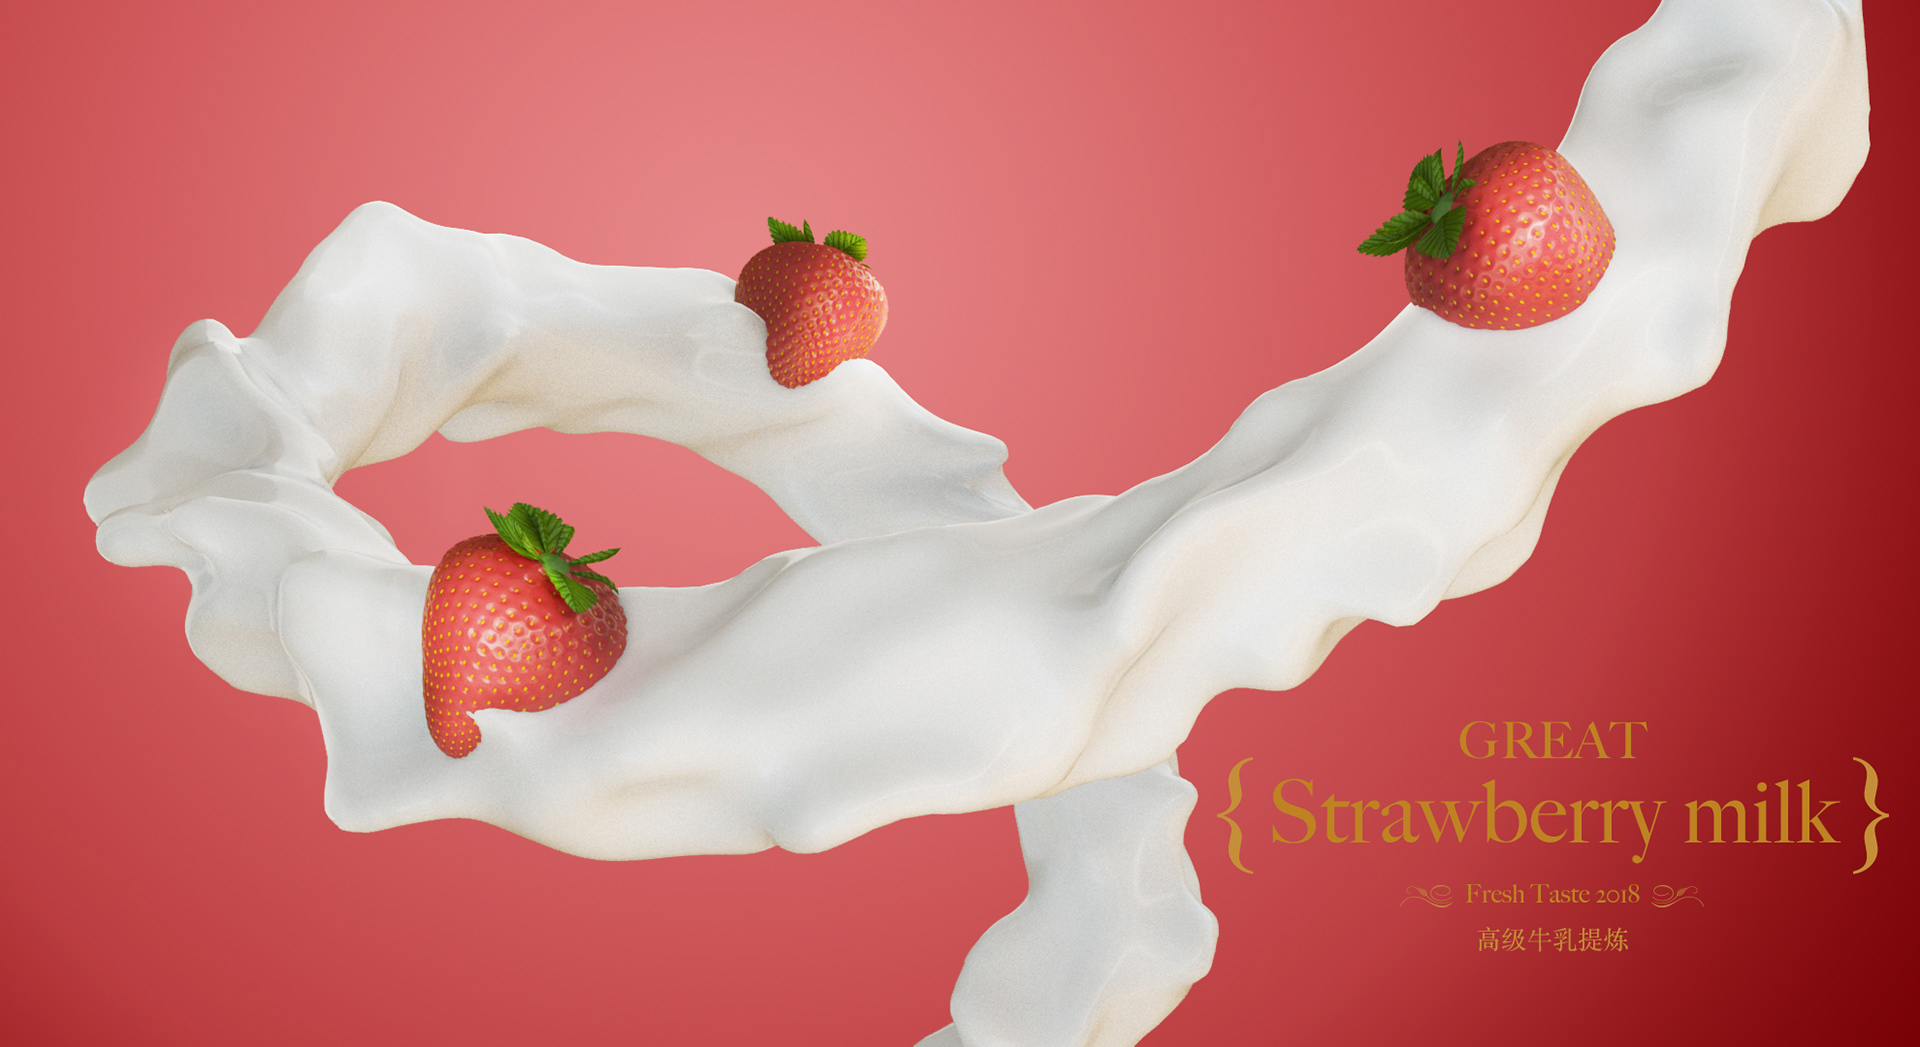 Strawwberrymilkk leaks